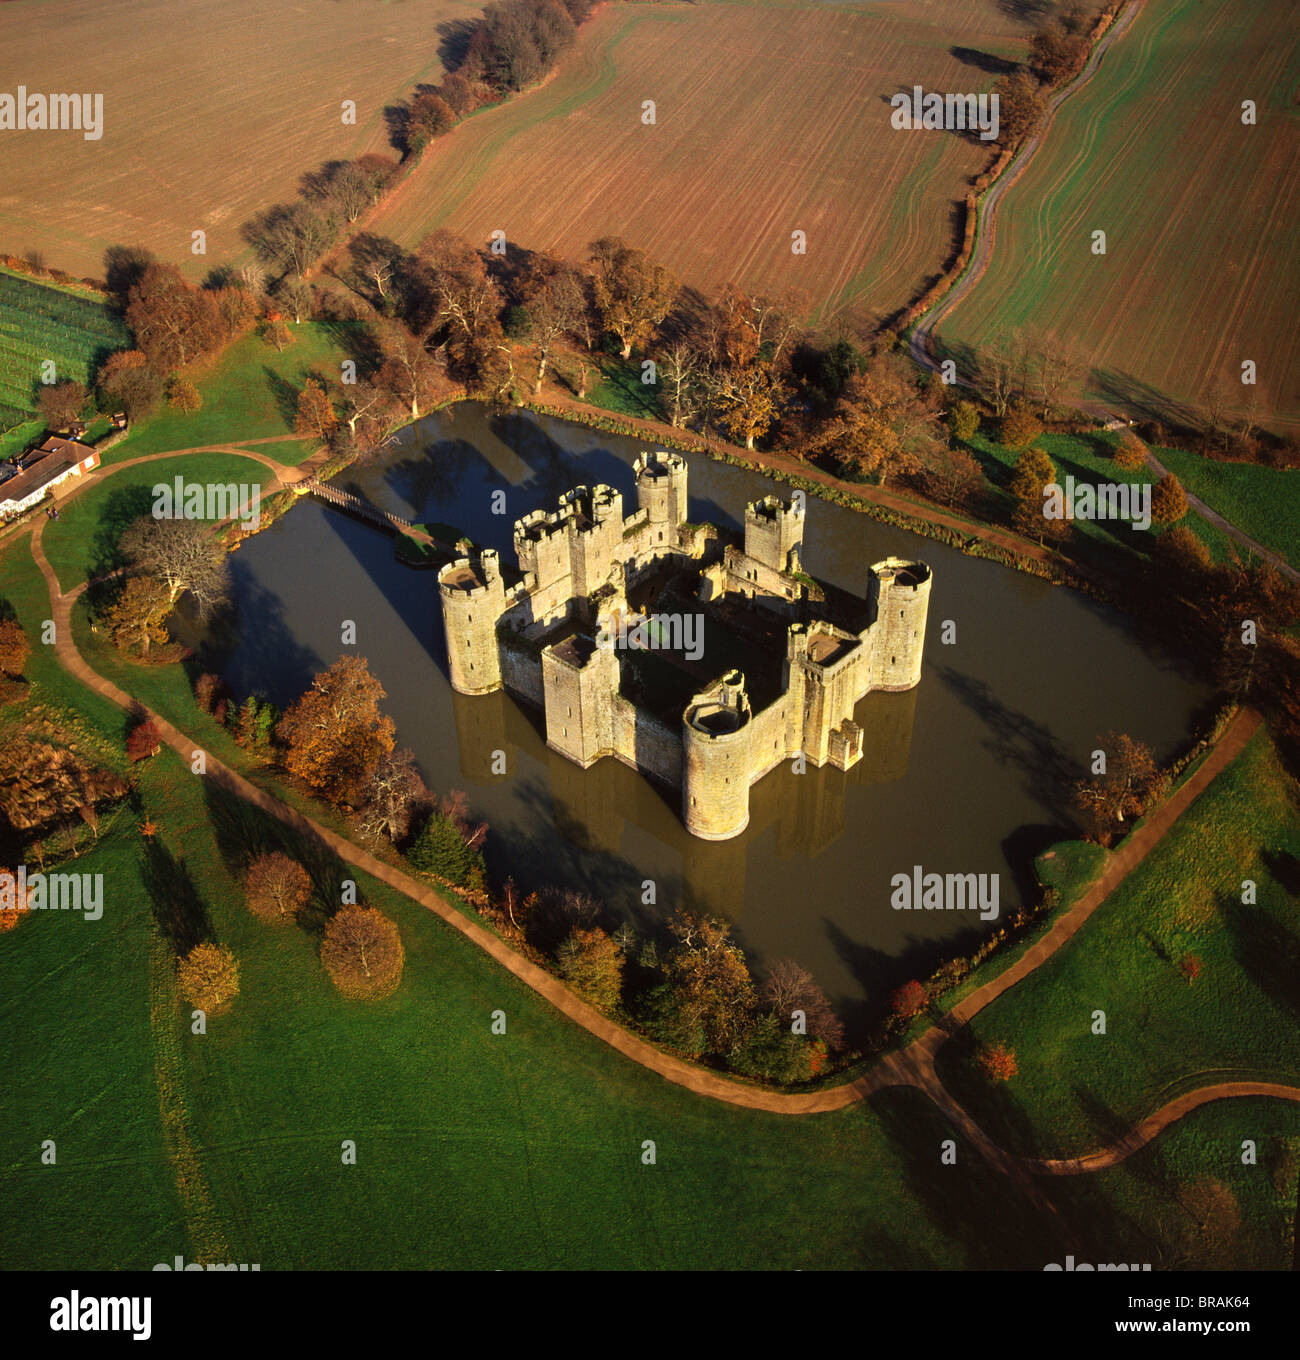 Immagine aerea del Castello Bodiam, tardo medievale castello moated, Weston-super-Mare, East Sussex, England, Regno Unito, Europa Foto Stock